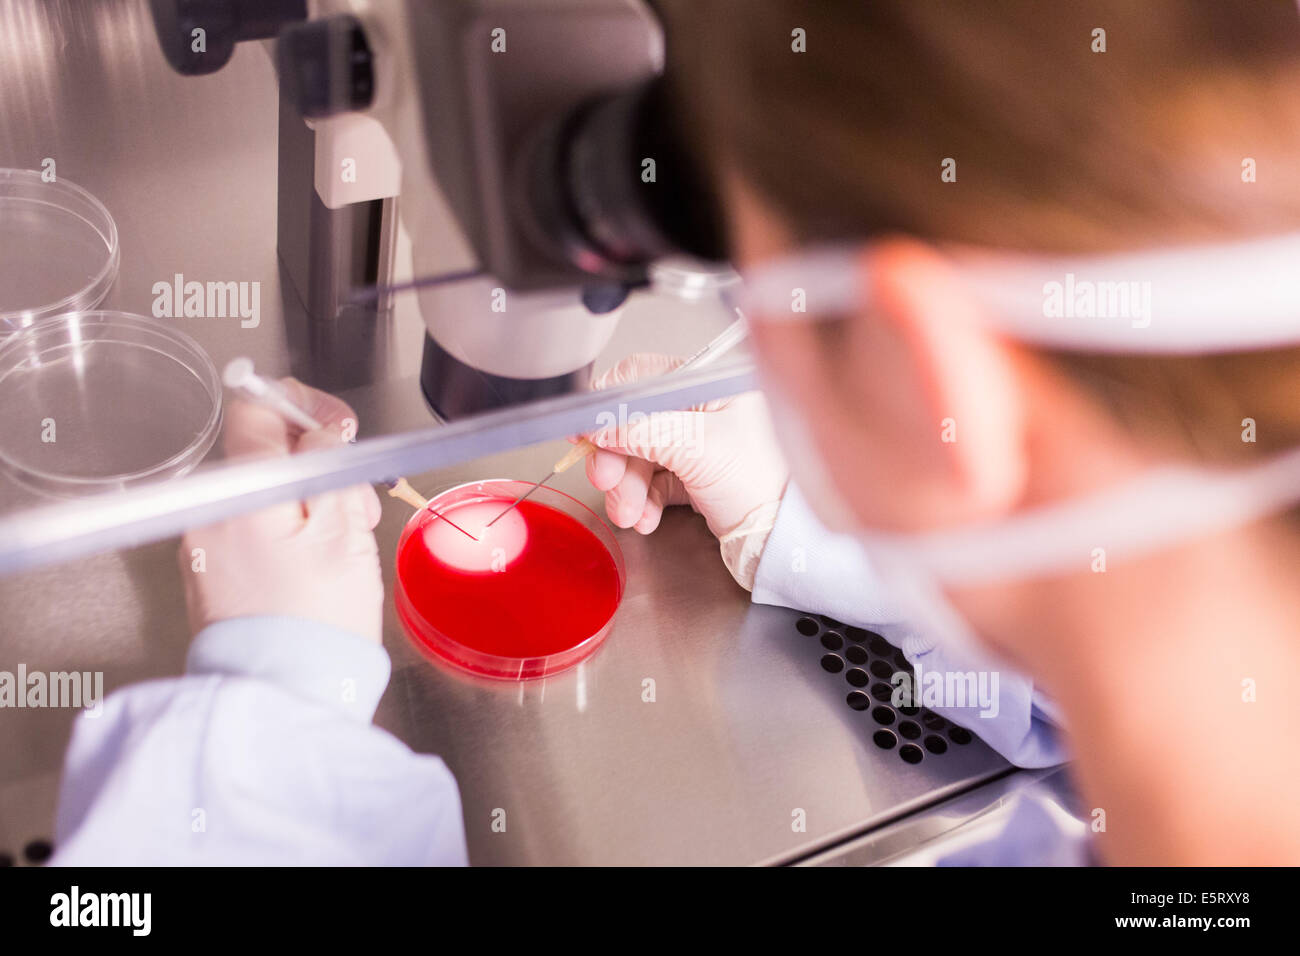 Un tecnico sta utilizzando un microscopio a luce per selezionare uova umano (Ovum) per la fecondazione in vitro, la procreazione medicalmente assistita Foto Stock